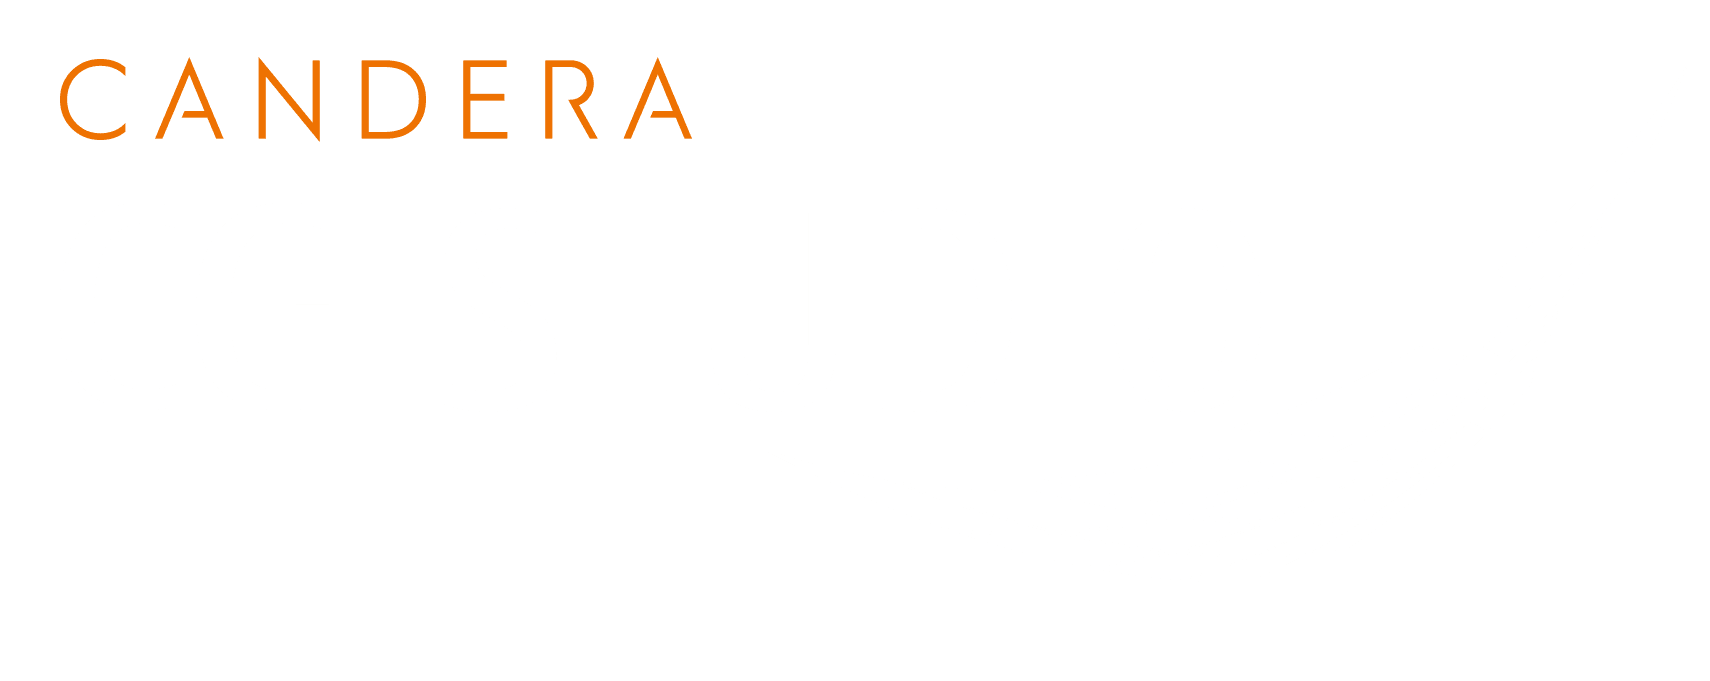 CGIStudio-Logo